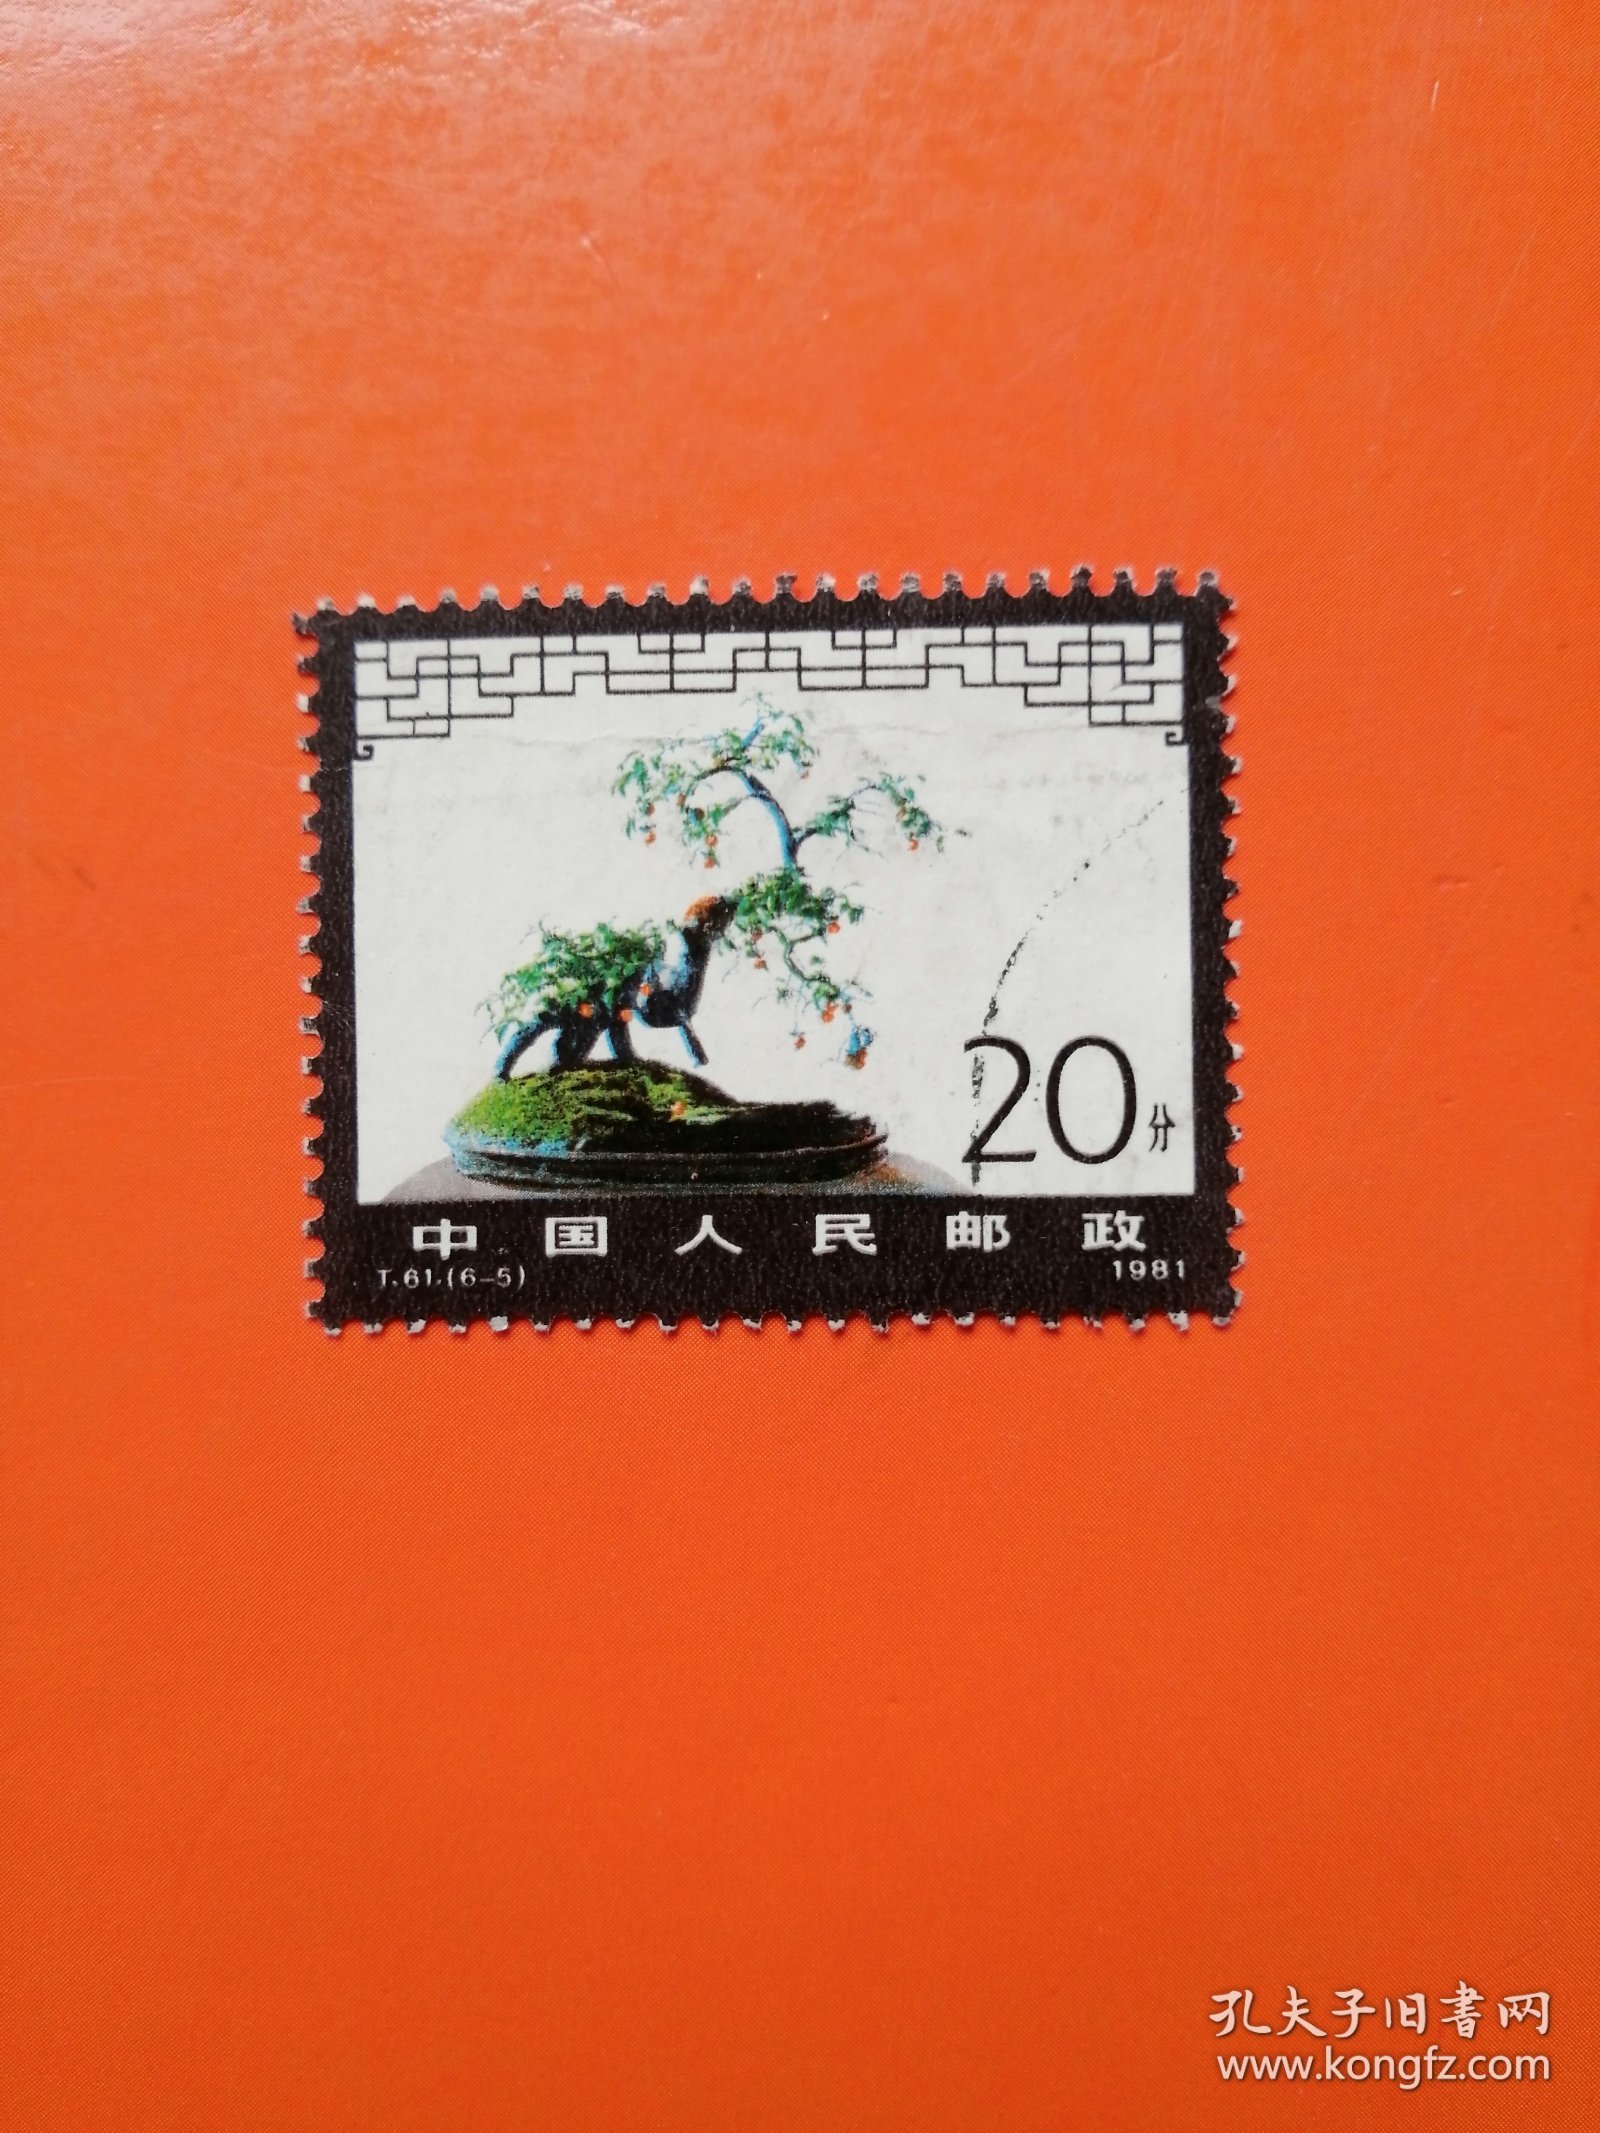 T61（6-5）盆景艺术 信销票